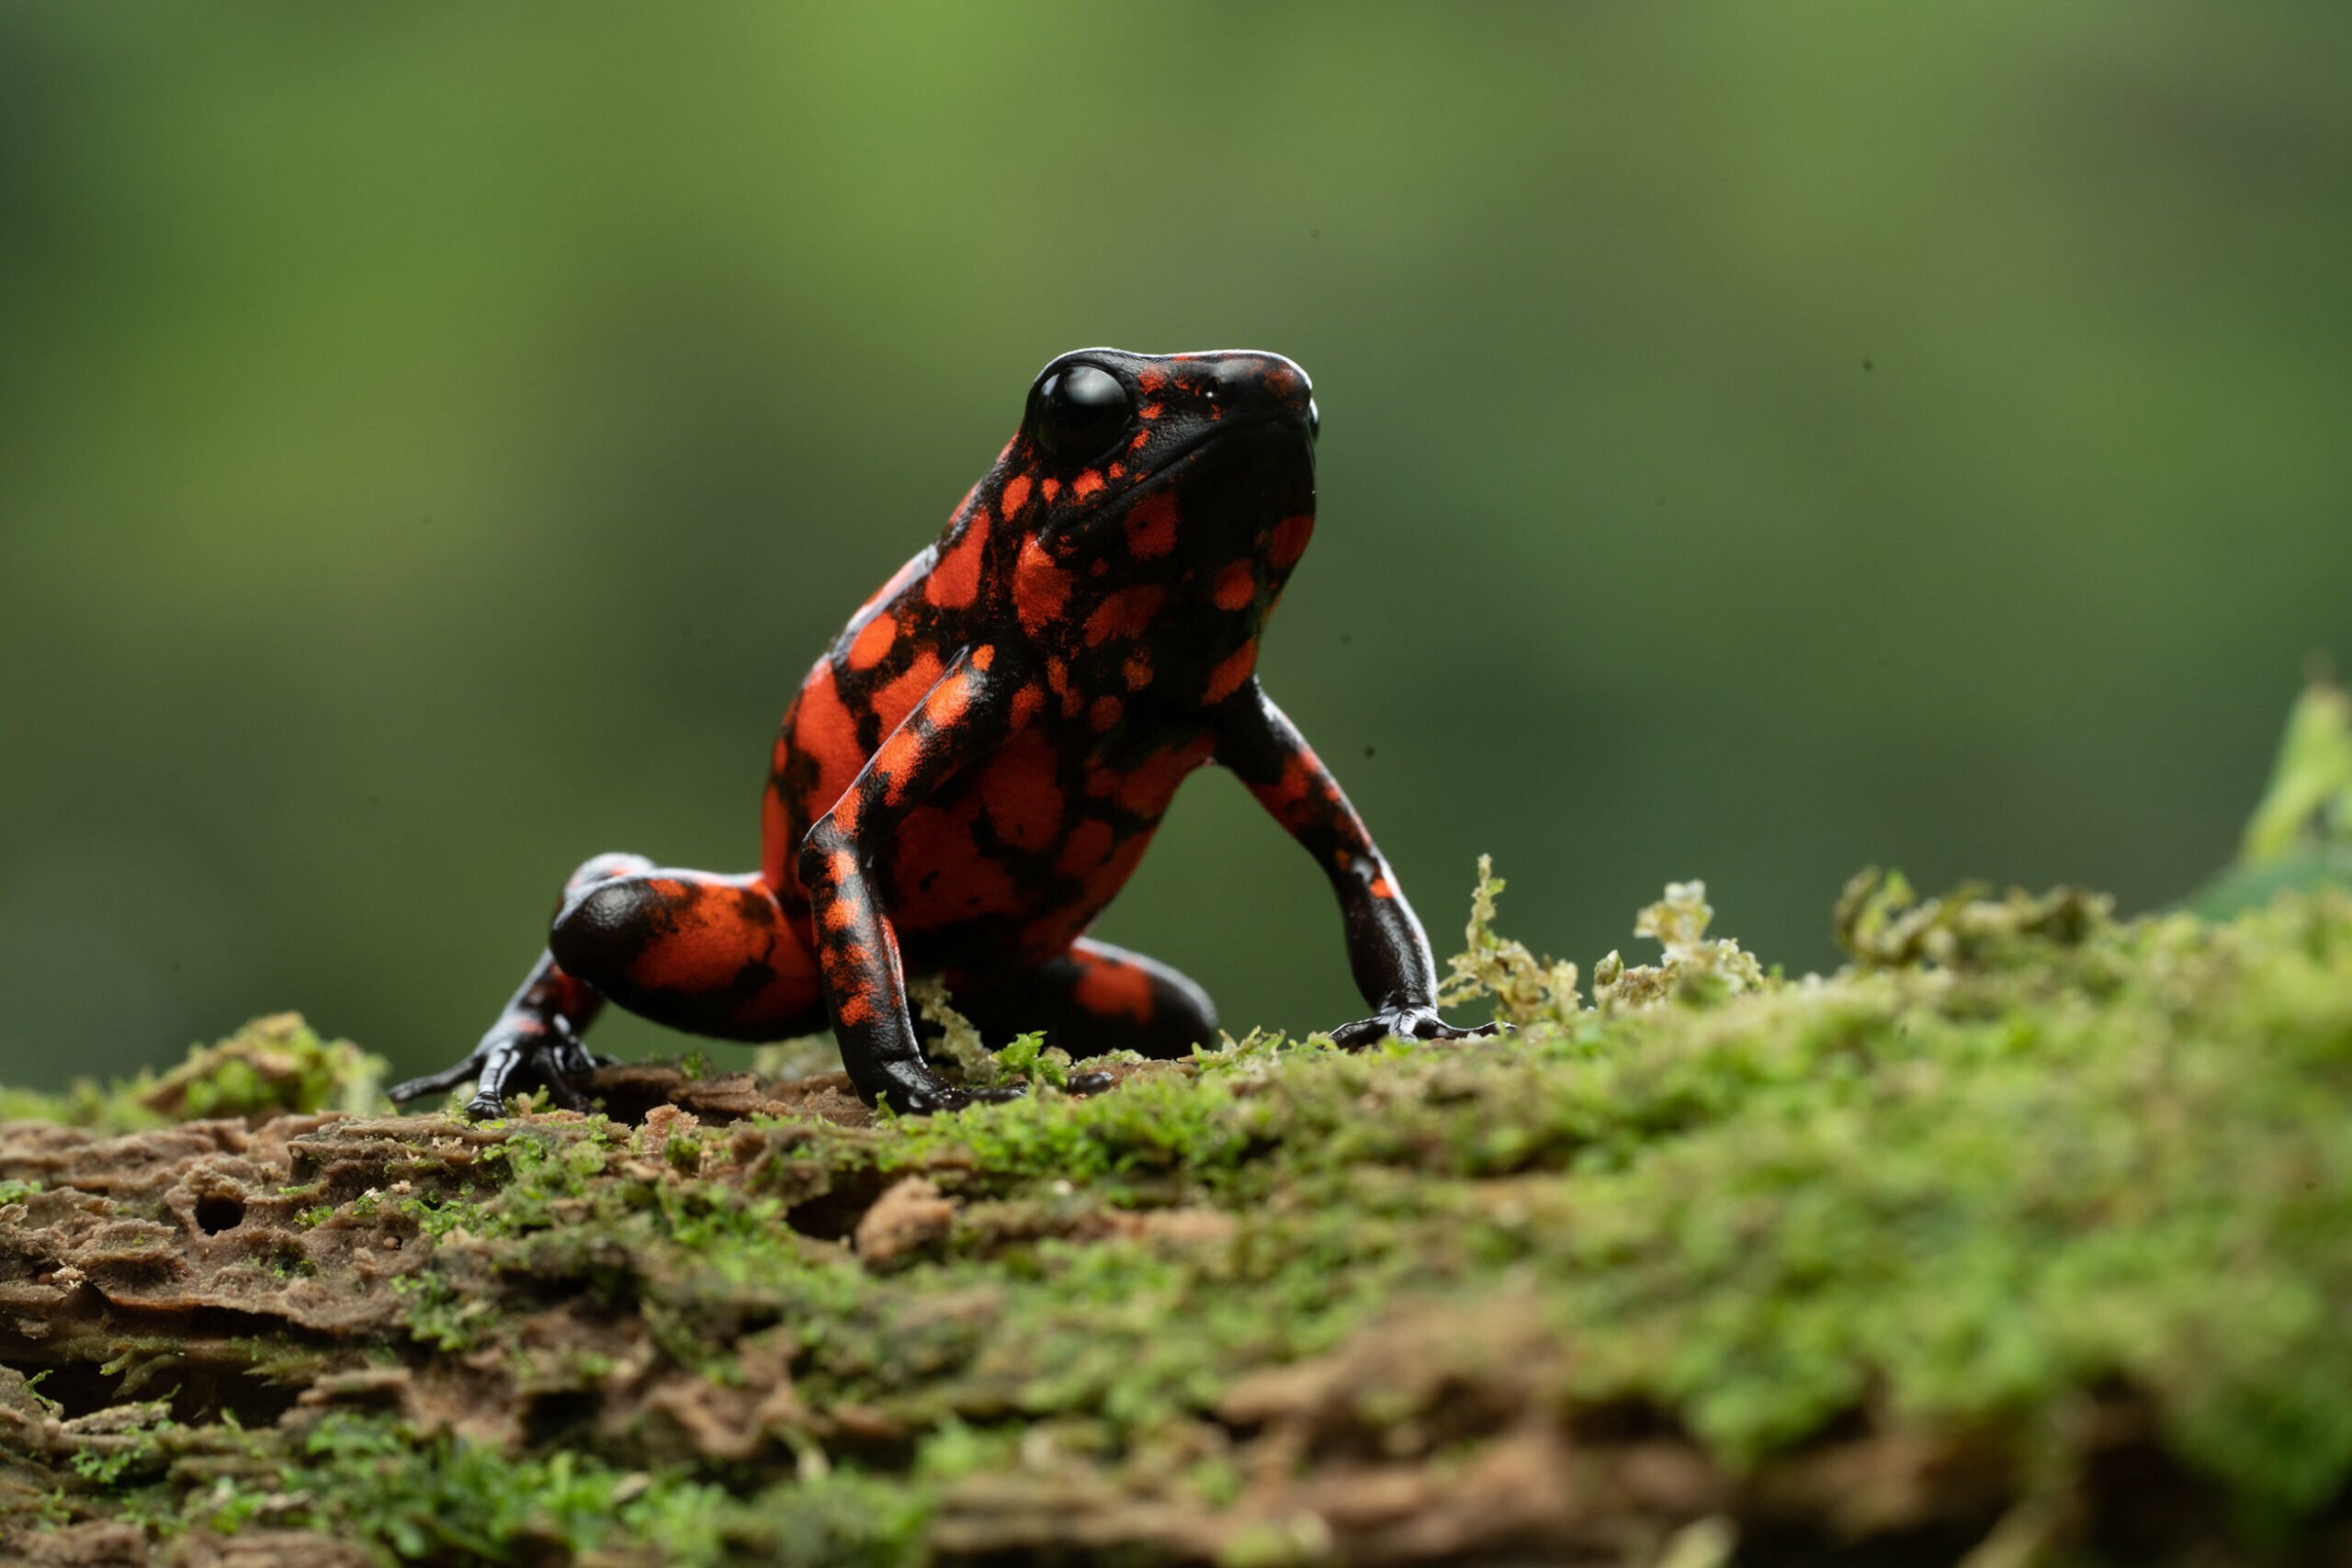 Little devil poison dart frog on a mossy log. 